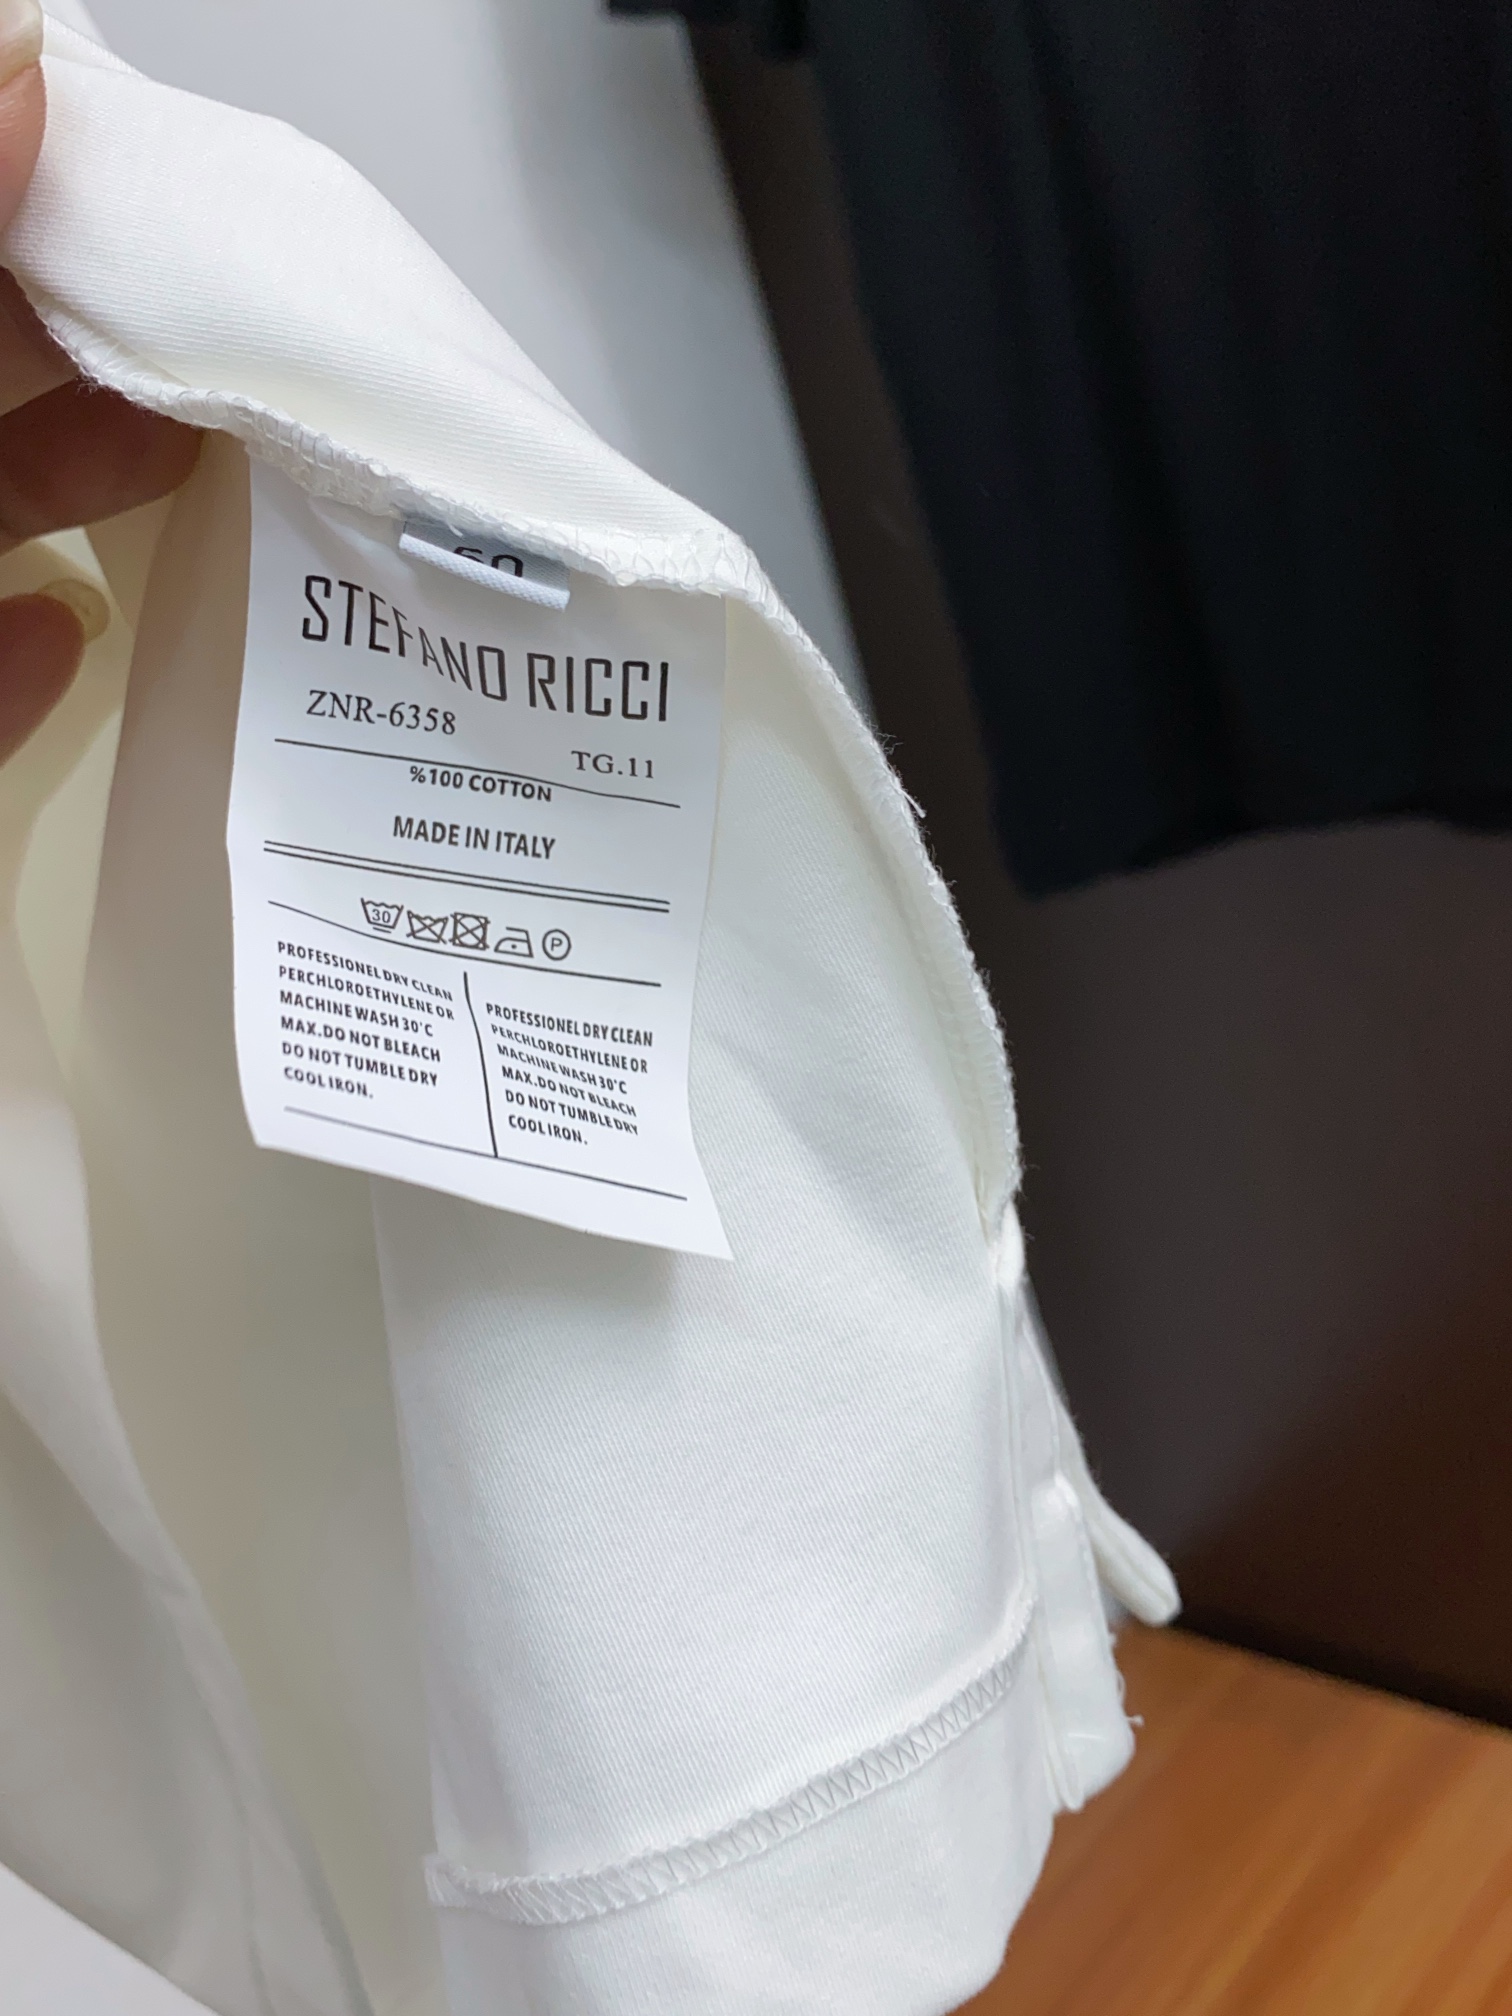 史蒂芬24SSS精选新疆长绒棉纱线环保染色定型面料上身柔软舒适领子螺纹同步染色制造立体印花细节拉满三标齐